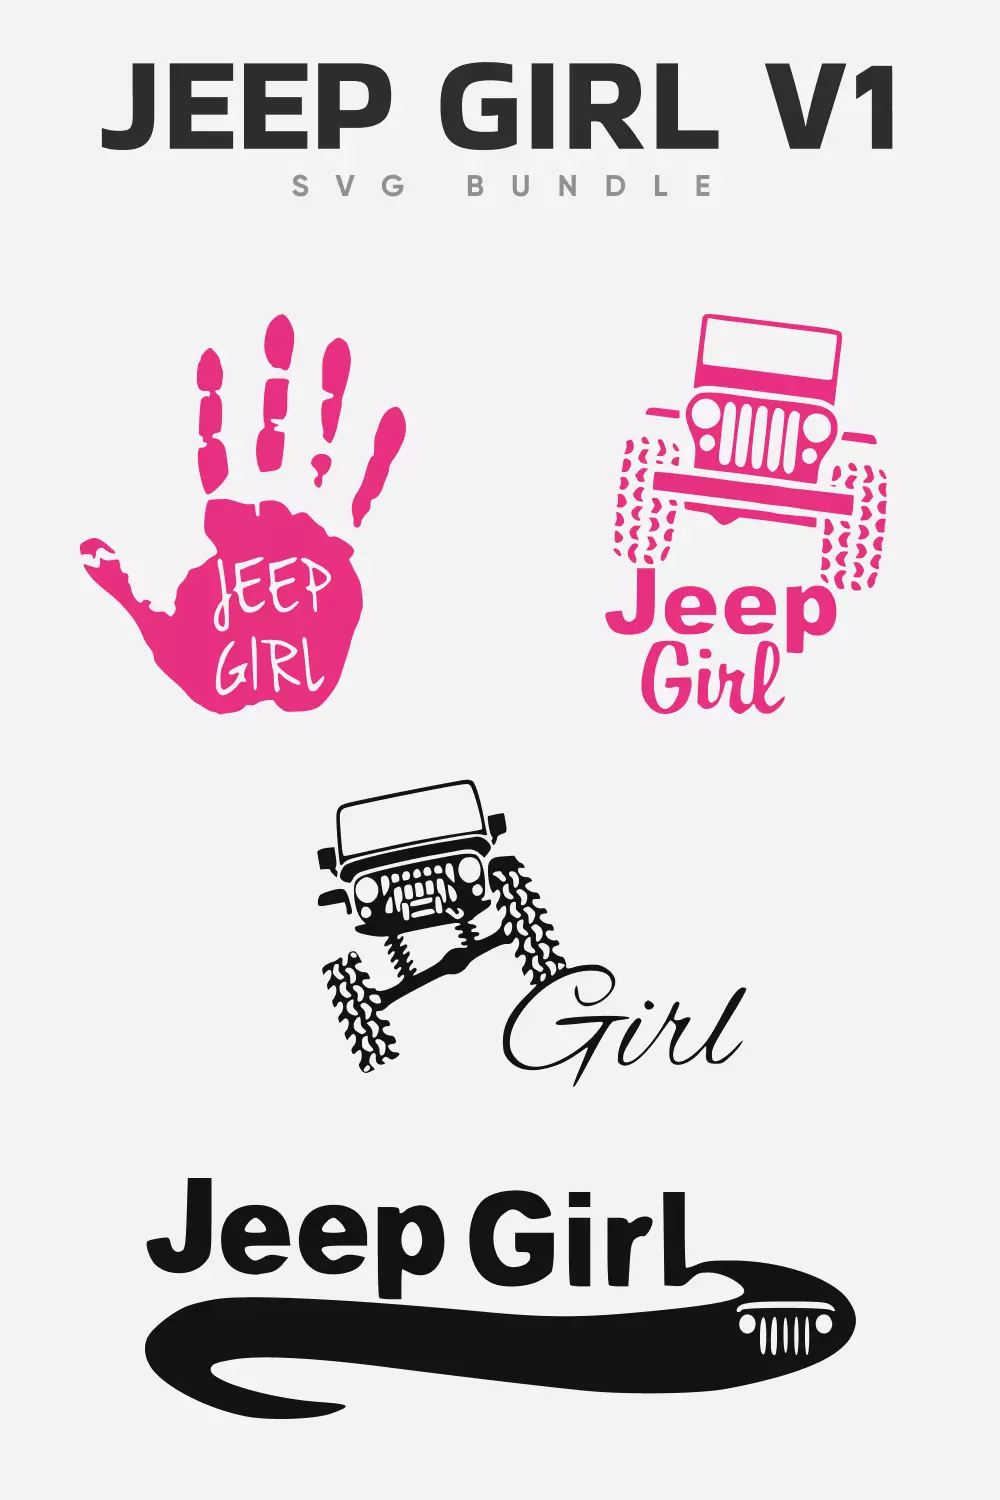 Jeep SVG Girl V1 Bundle.